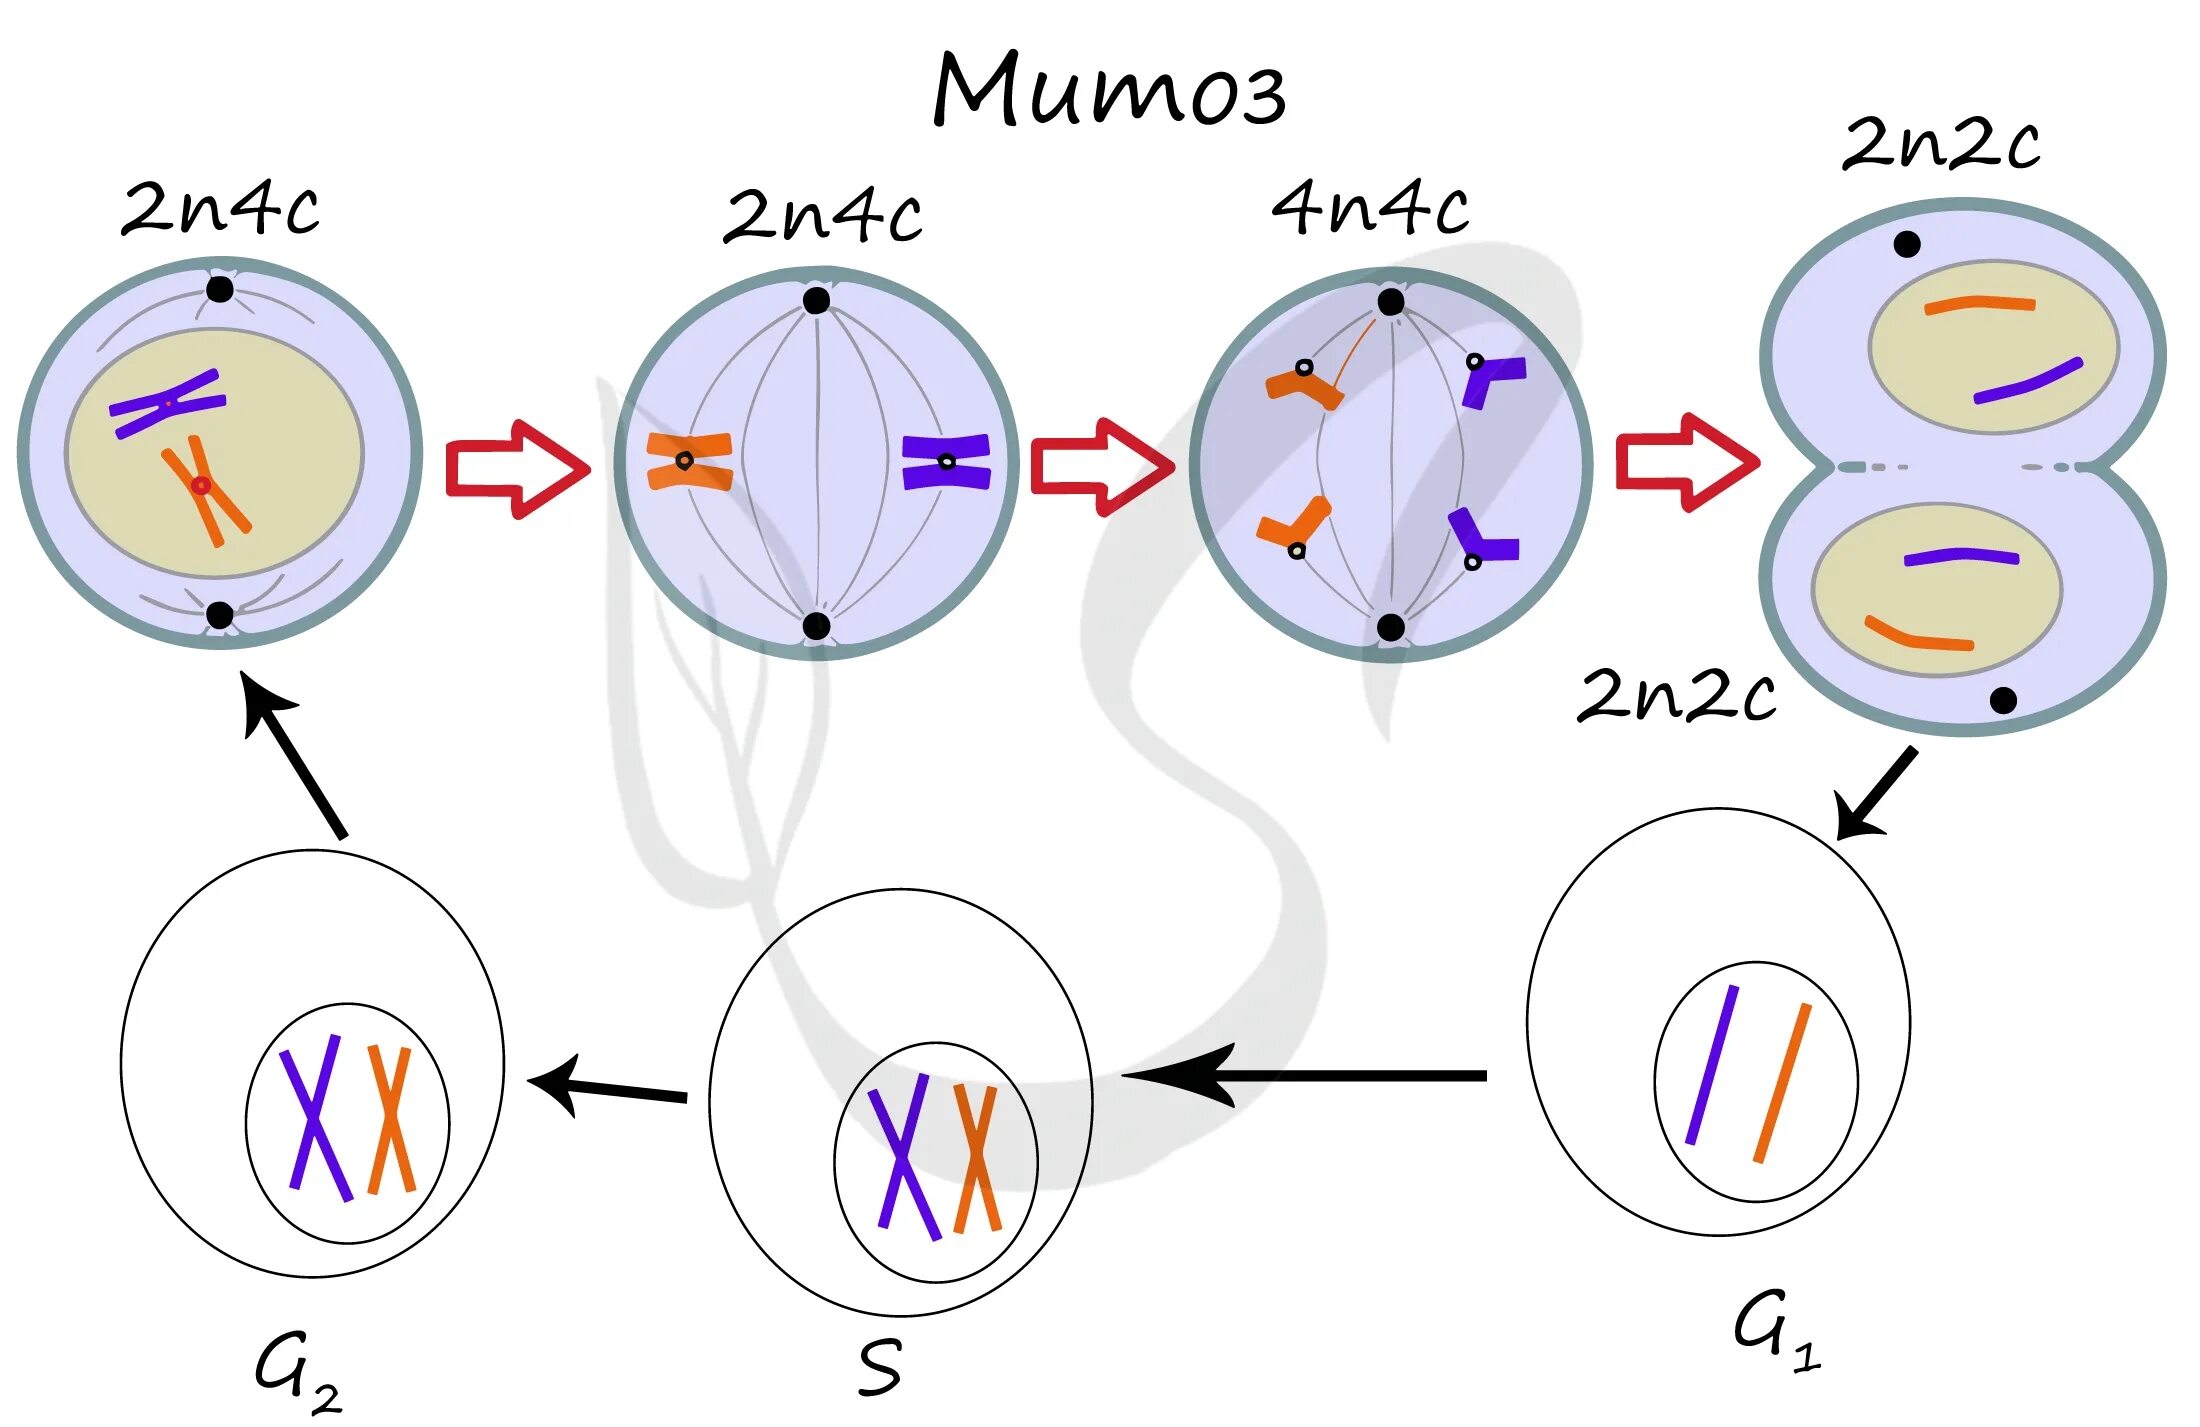 Количество хромосом в дочерних клетках мейоз. Схема митоза 2n. Схема мейоза для клетки с хромосомным набором 2n 6. Фазы митоза 2n2c. Митоз схема 2n2c.